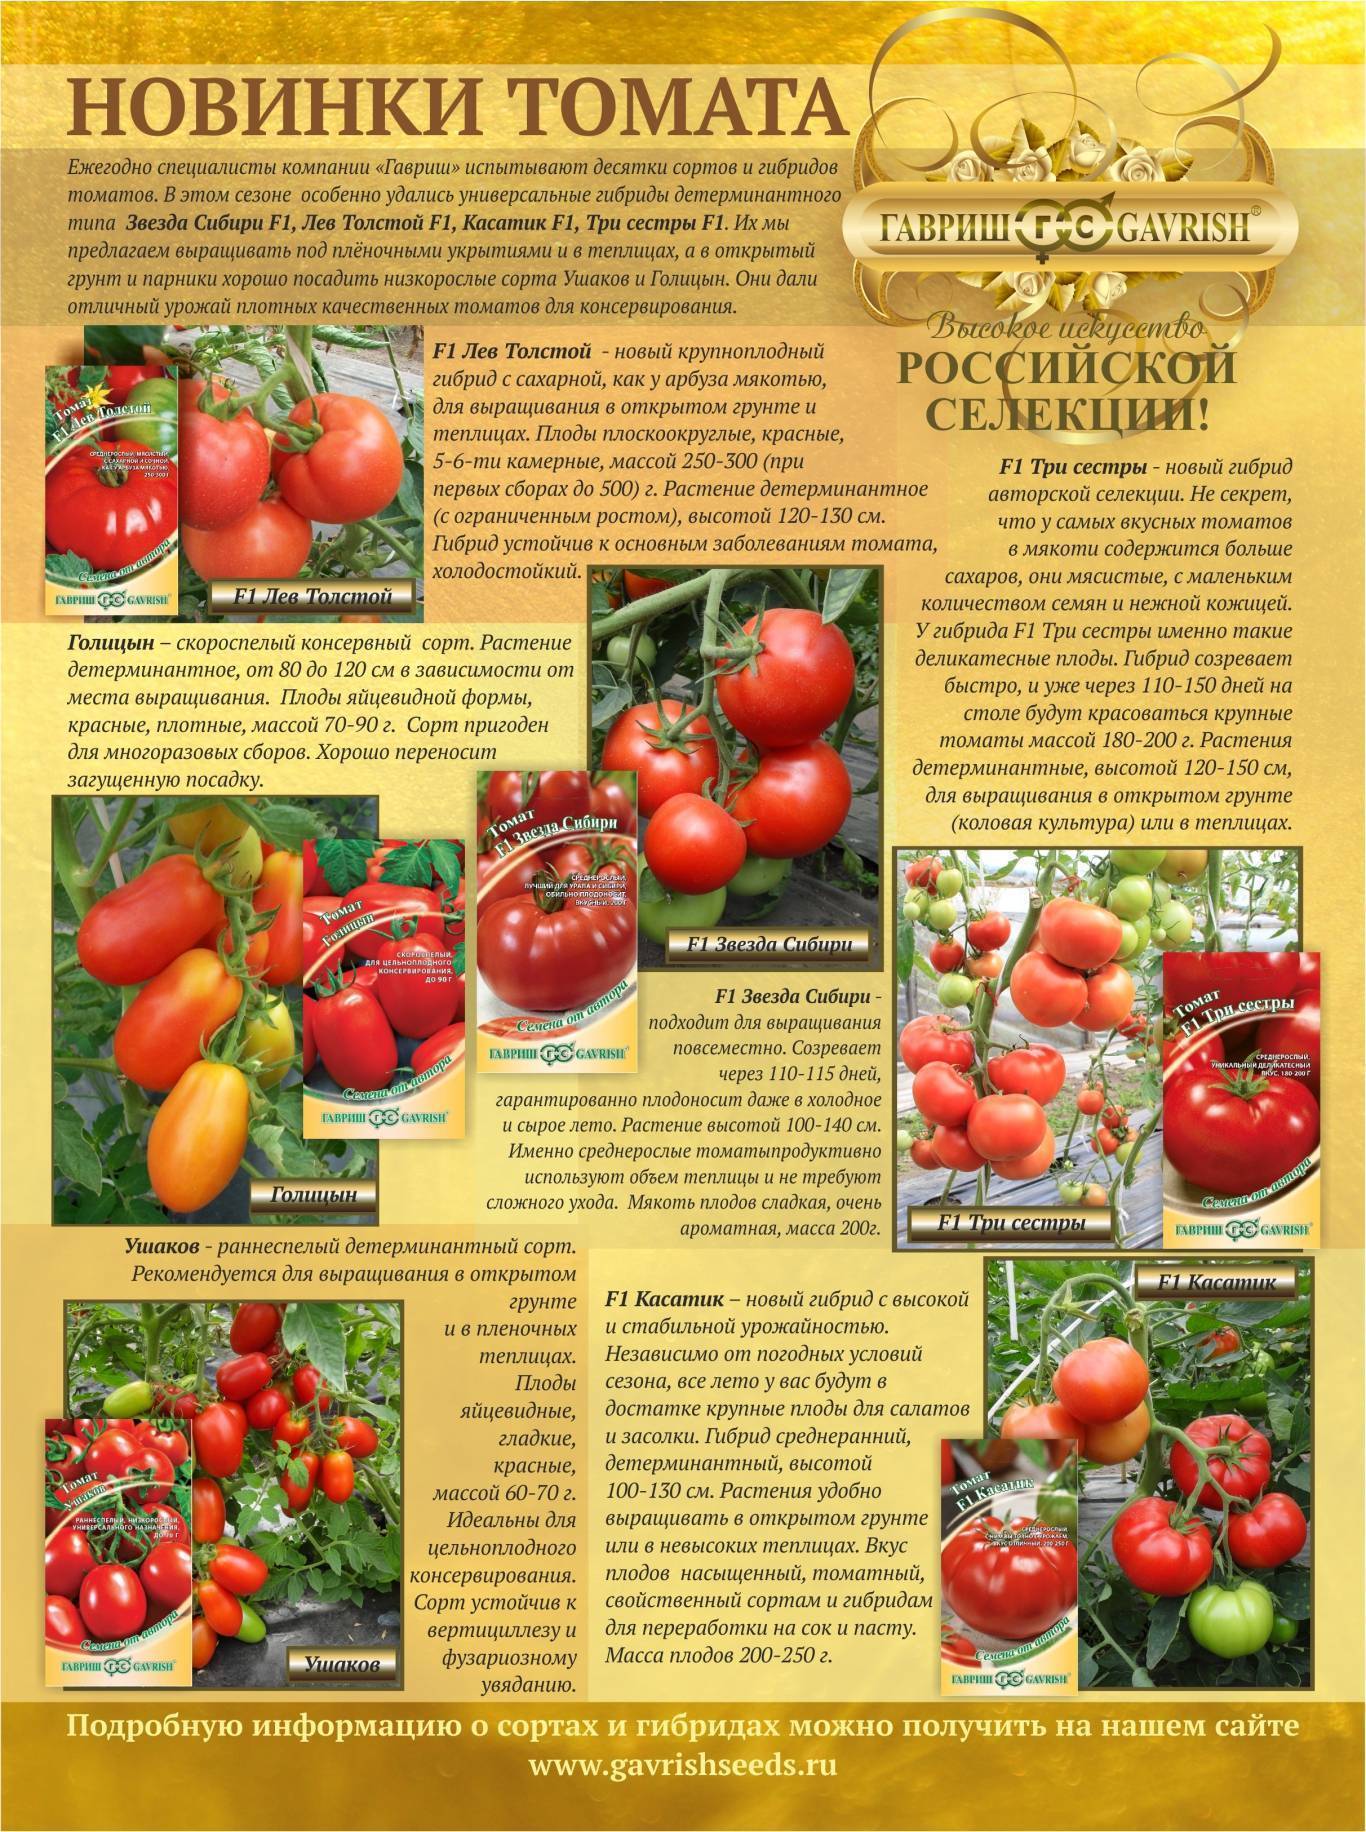 Описание ампельного сорта томата водопад, его выращивание и уход